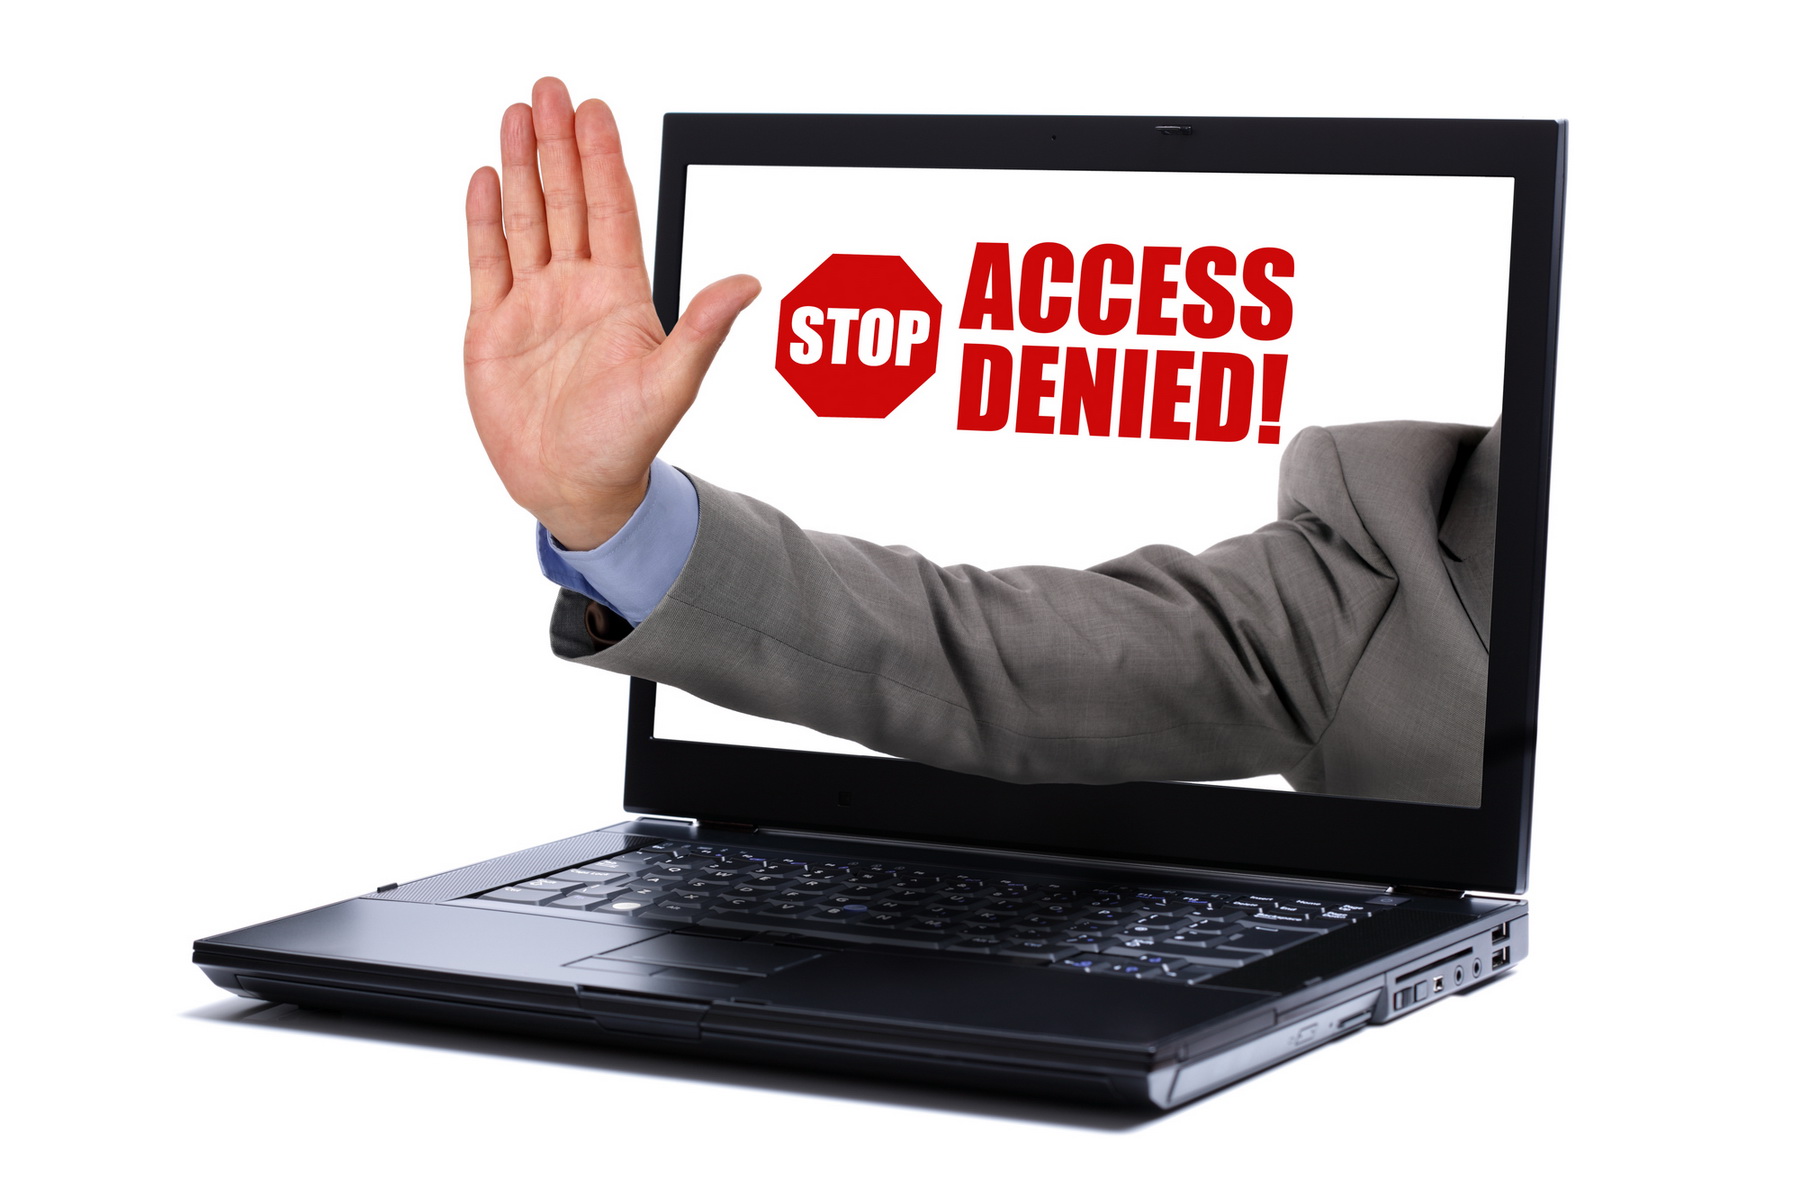 C access denied. Цензура в интернете. Нежелательный контент в интернете. Недостоверная информация в интернете. Ограничение интернета.